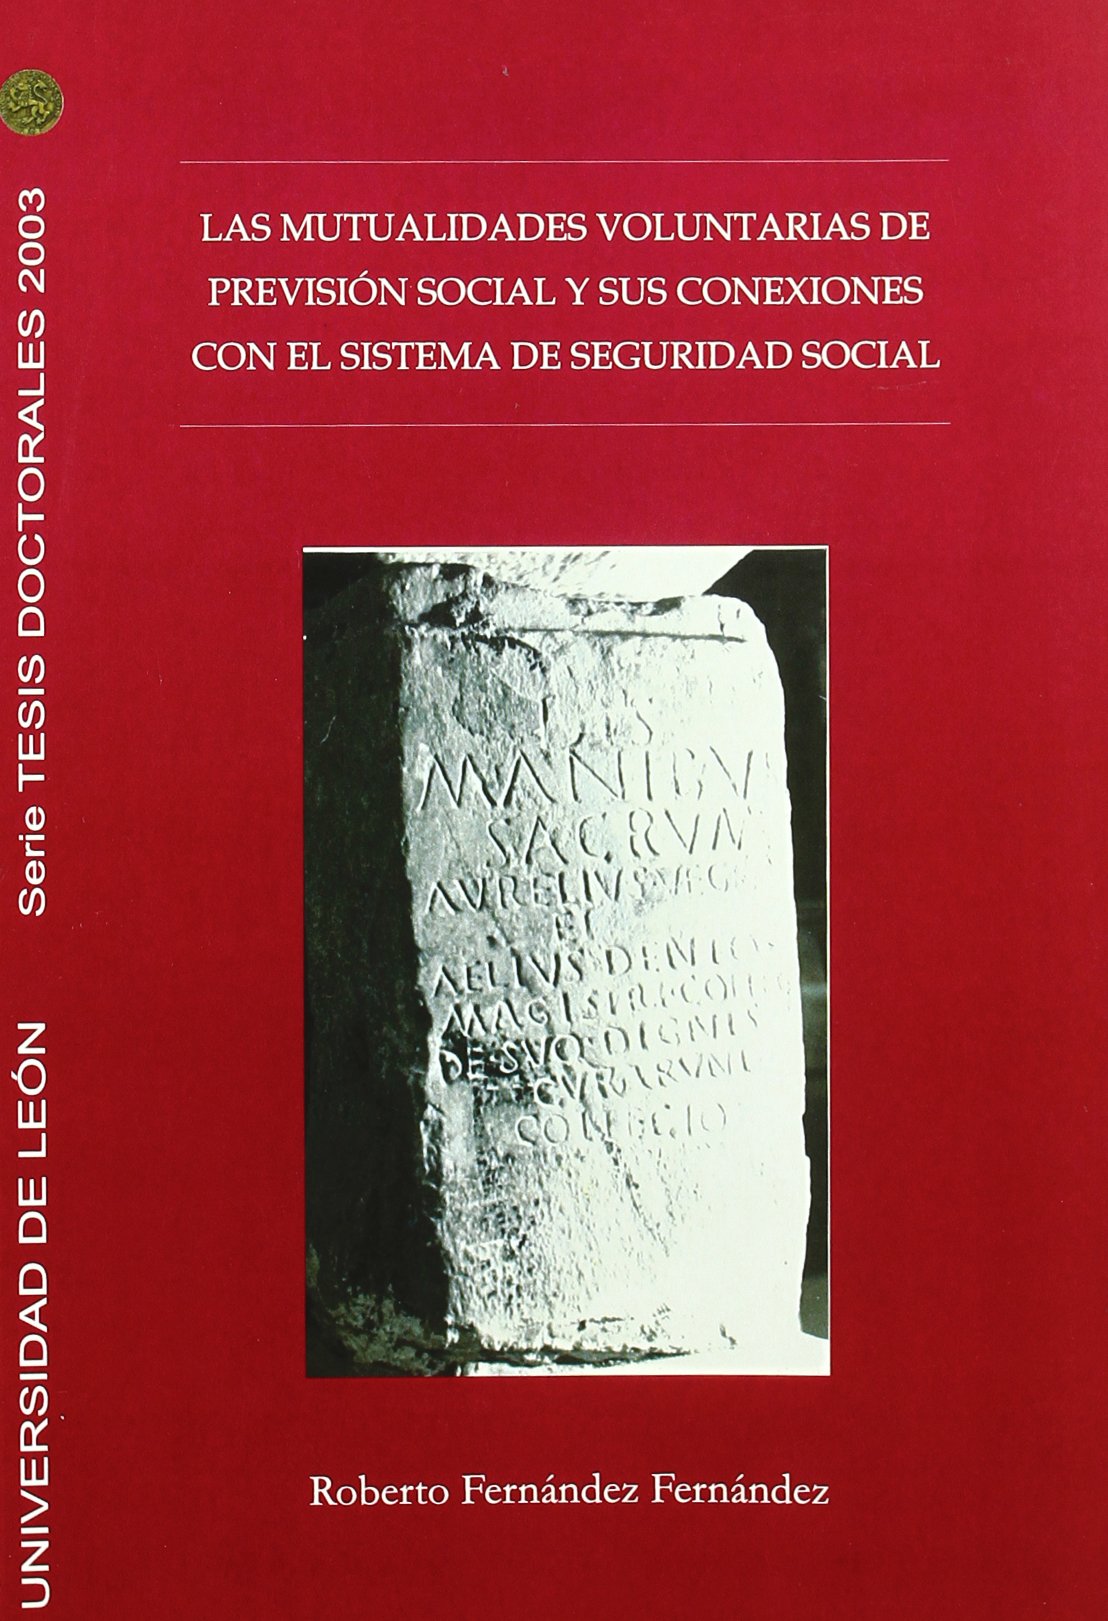 Imagen de portada del libro Las mutualidades voluntarias de previsión social y sus conexiones con el sistema de seguridad social